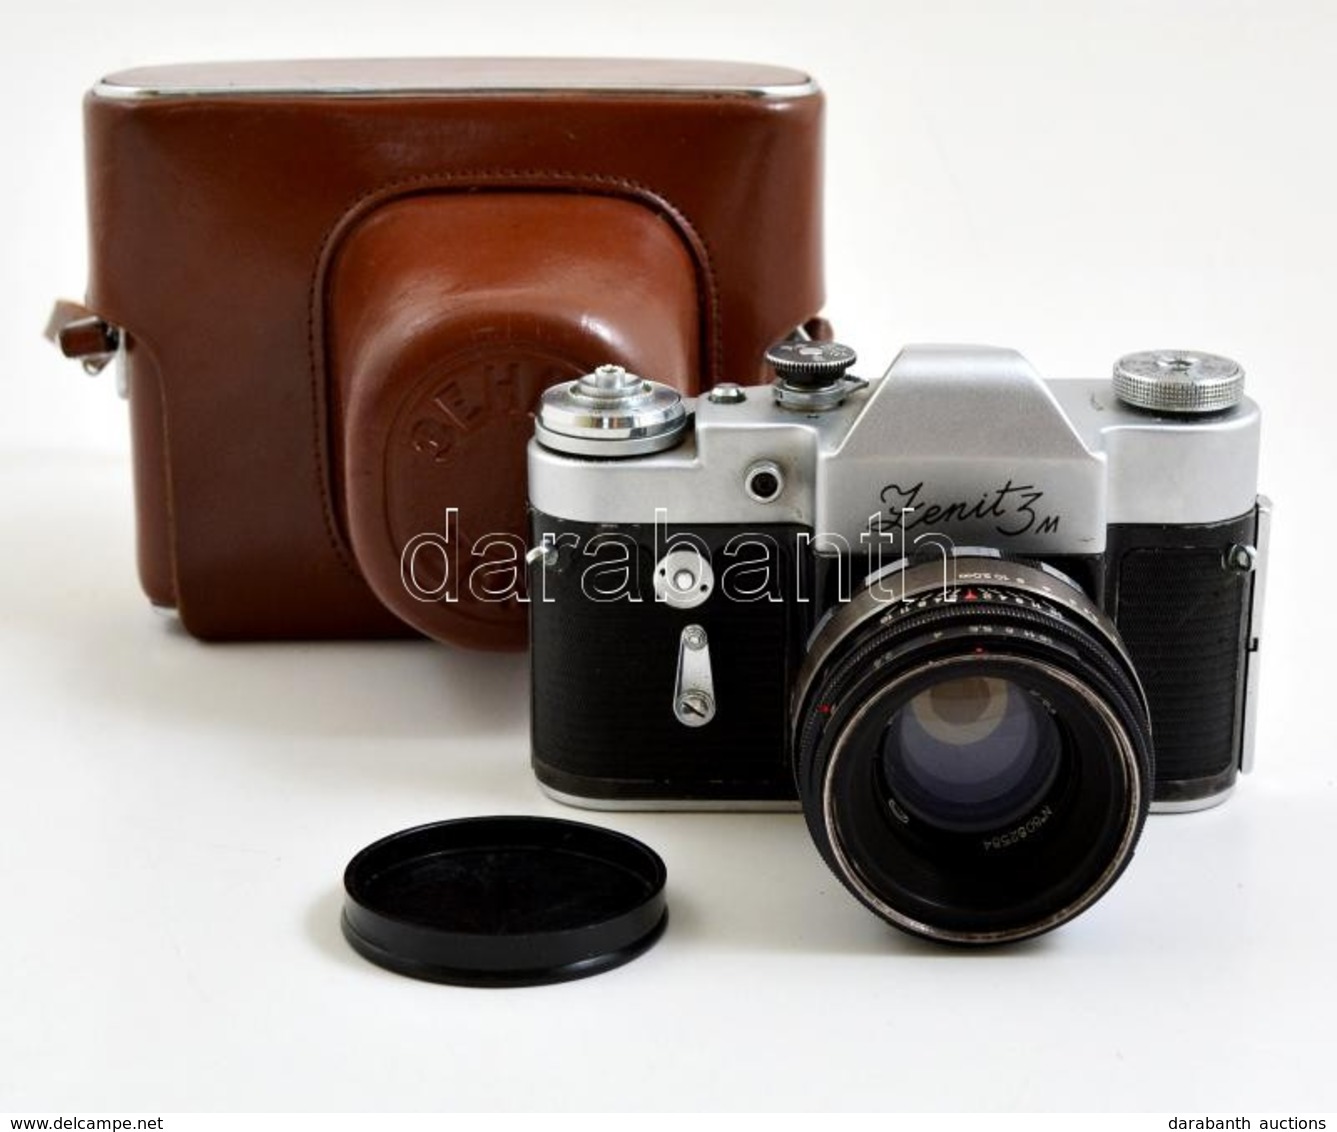 1969 Zenit 3M Fényképez?gép, Helios-44 2/58 Objektívvel, Eredeti B?r Tokjában, M?köd?képes állapotban / Vintage Russian  - Fotoapparate